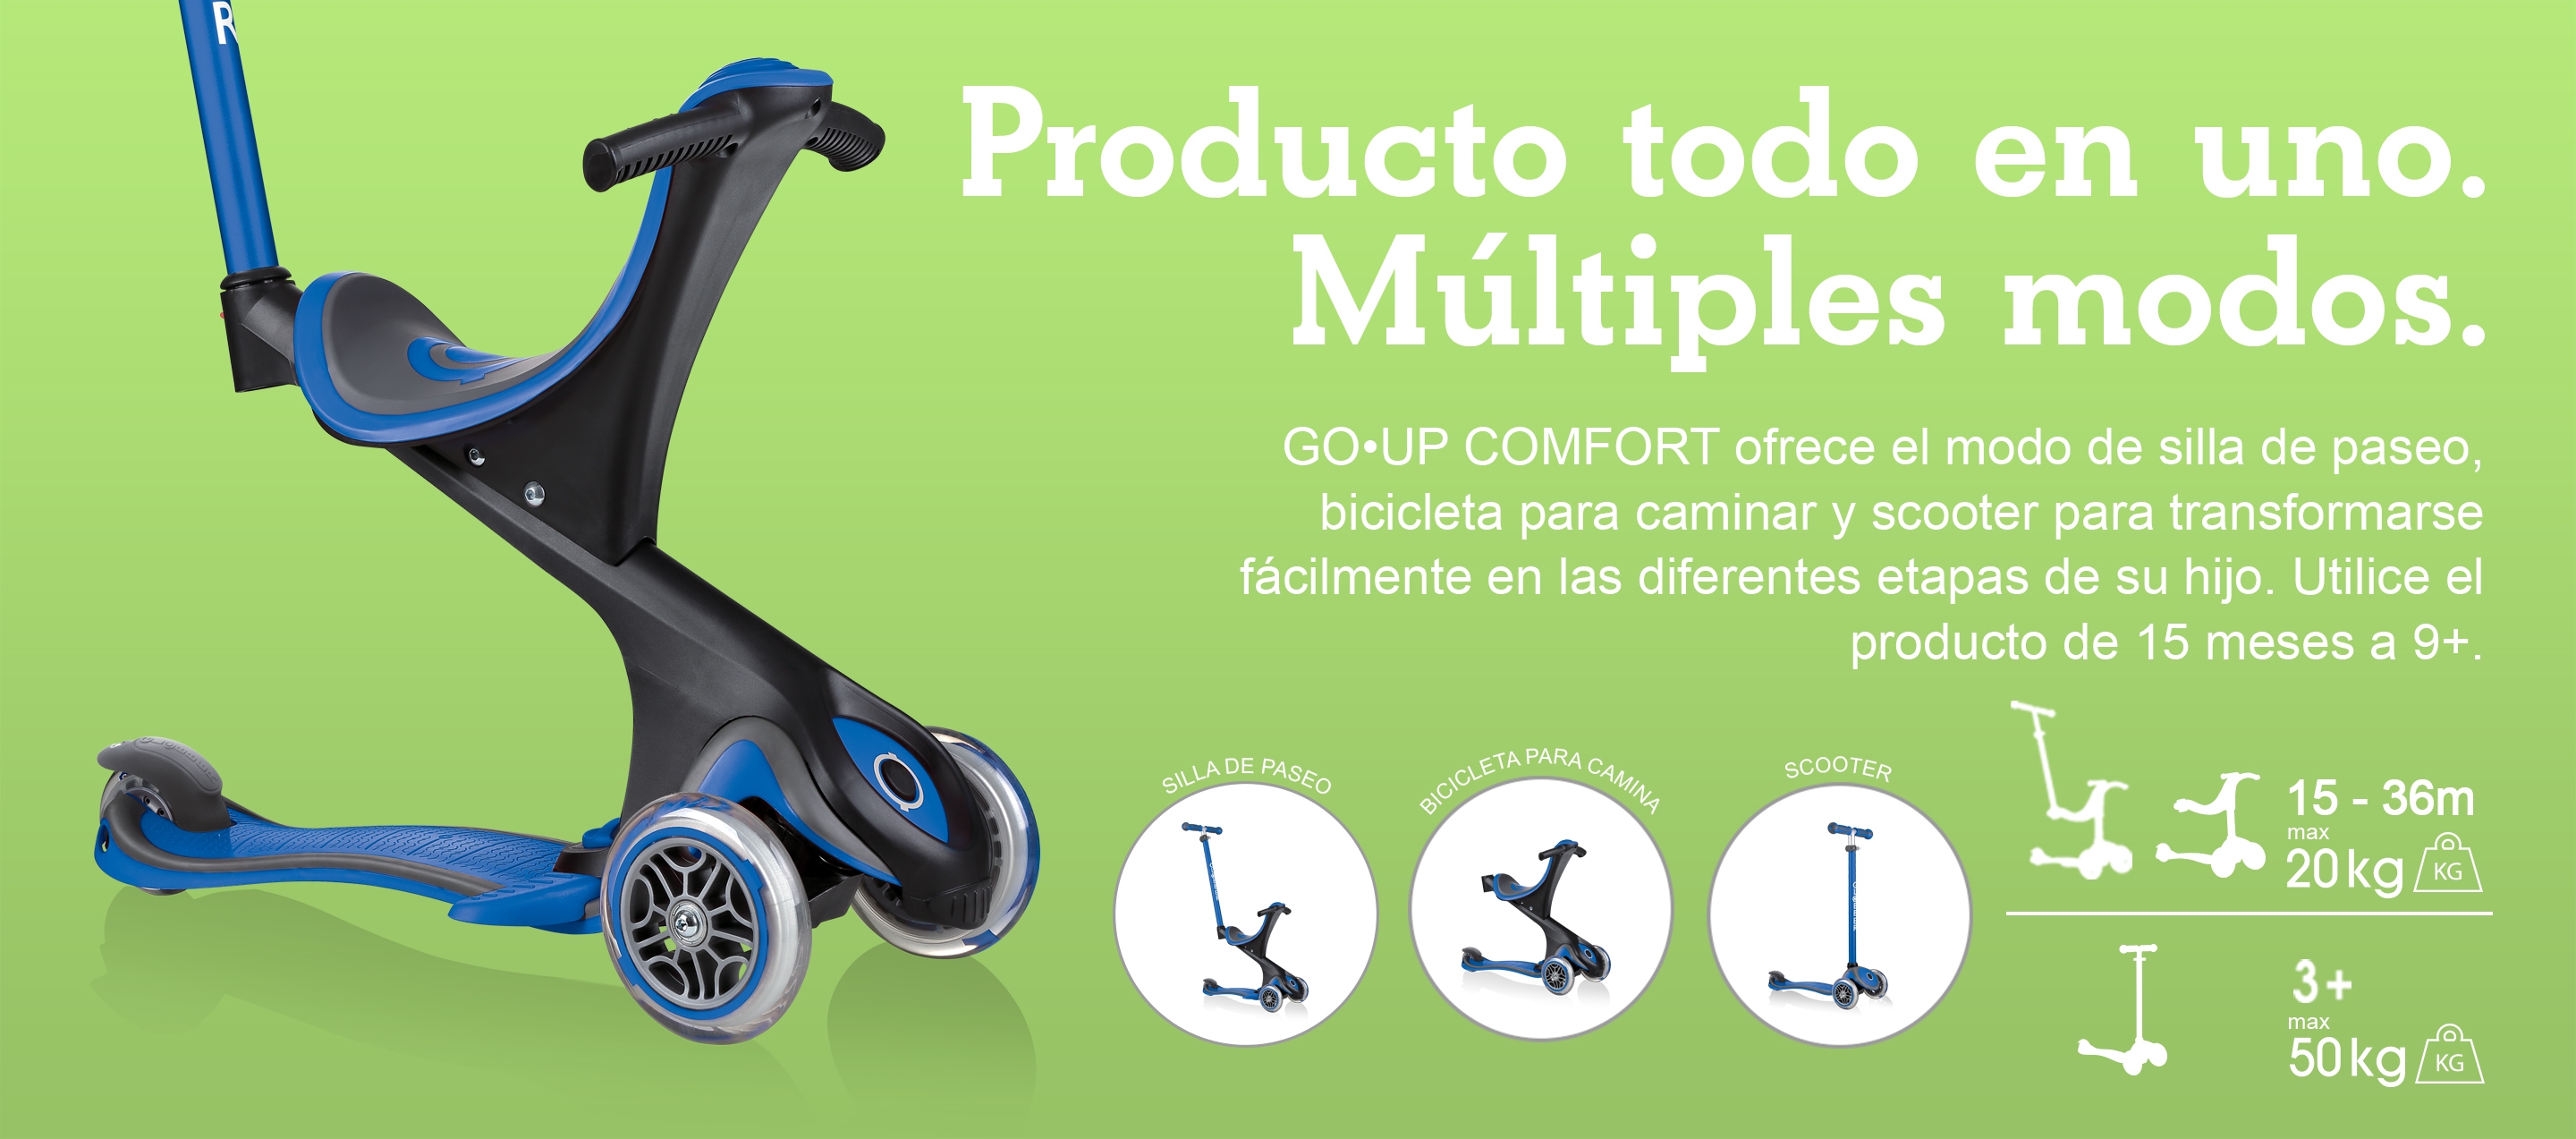 Producto todo en uno. Múltiples modos. GO•UP COMFORT ofrece el modo de silla de paseo, bicicleta para caminar y scooter para transformarse fácilmente en las diferentes etapas de su hijo. Utilice el producto de 15 meses a 9+.